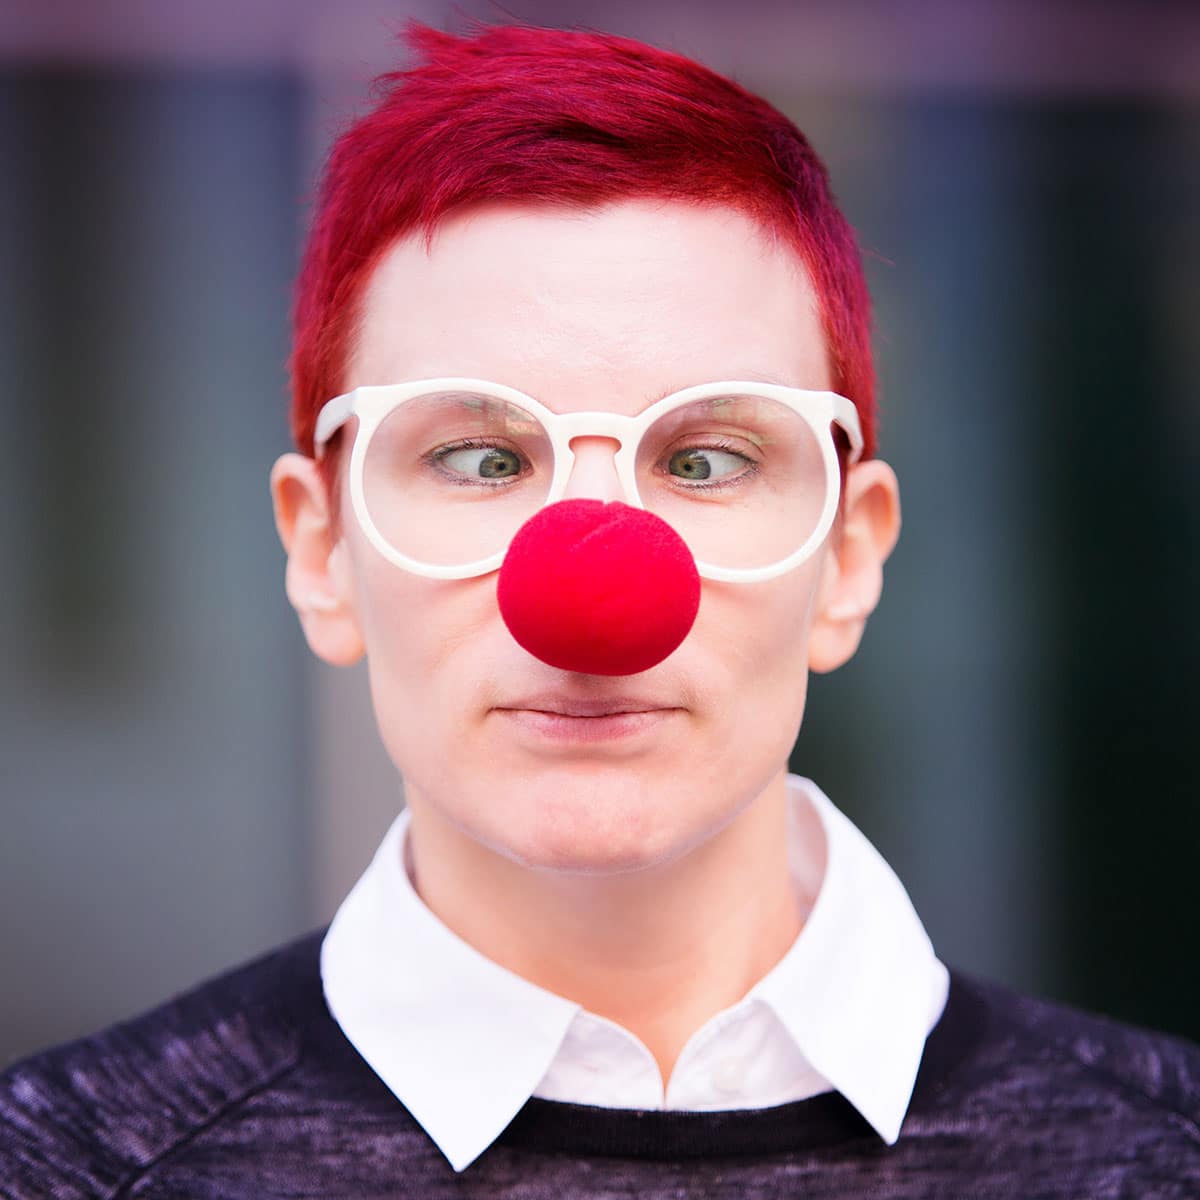 Красный нос у мужчины. Красный нос клоуна. Человек с клоунским носом. Мужик с красным носом.